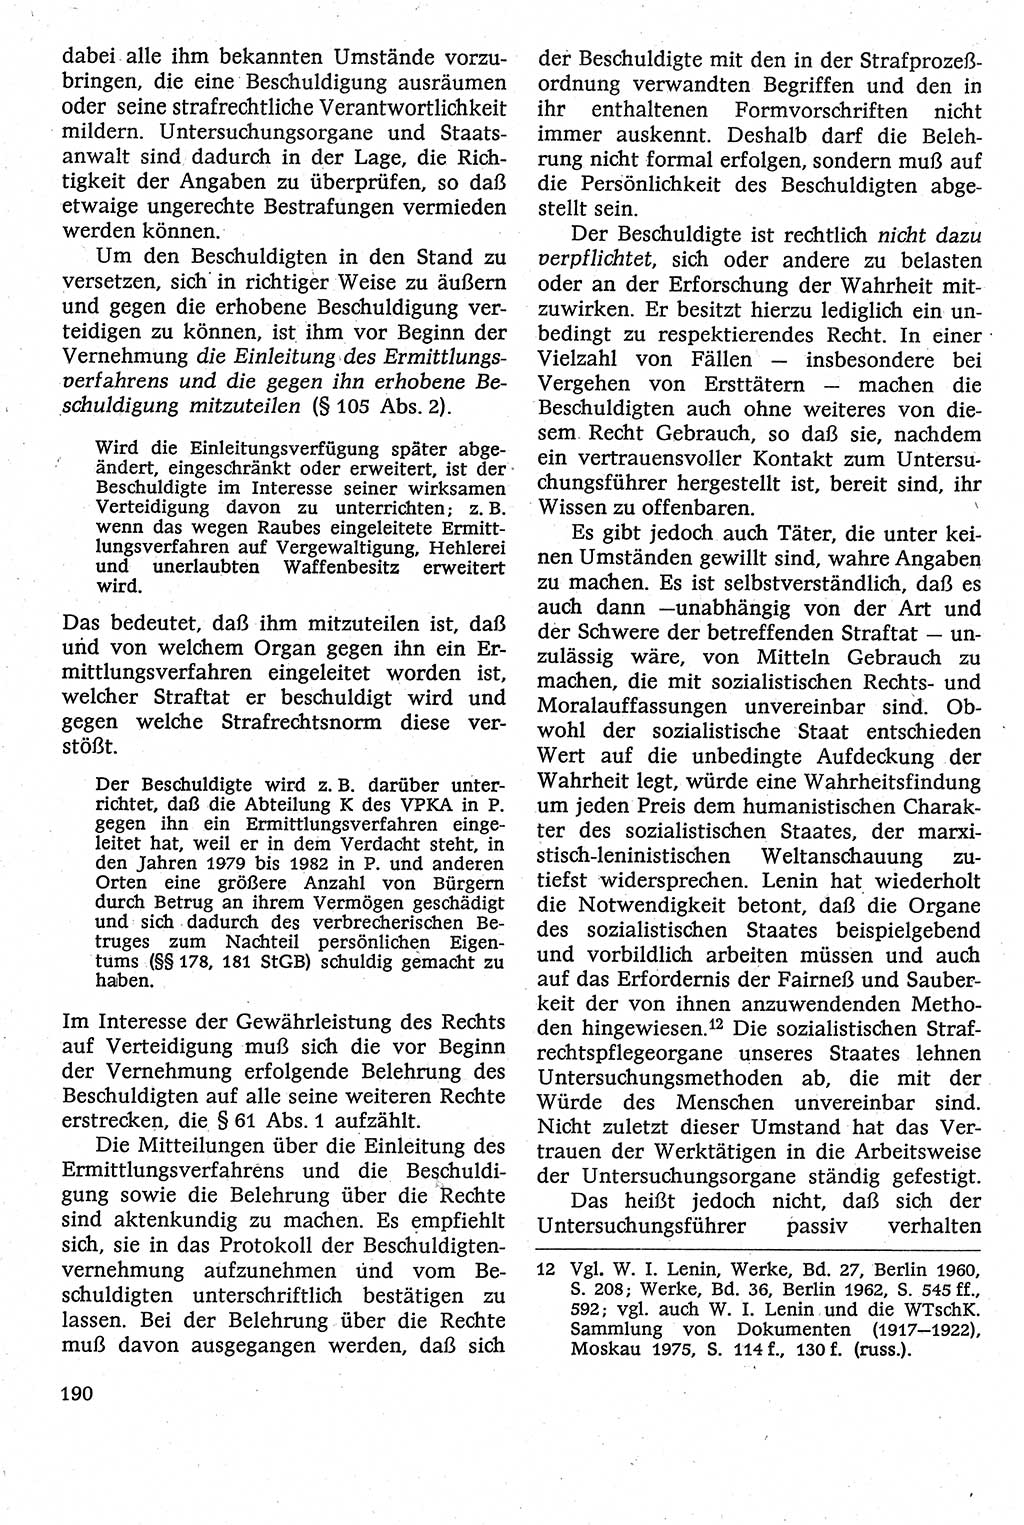 Strafverfahrensrecht [Deutsche Demokratische Republik (DDR)], Lehrbuch 1982, Seite 190 (Strafverf.-R. DDR Lb. 1982, S. 190)